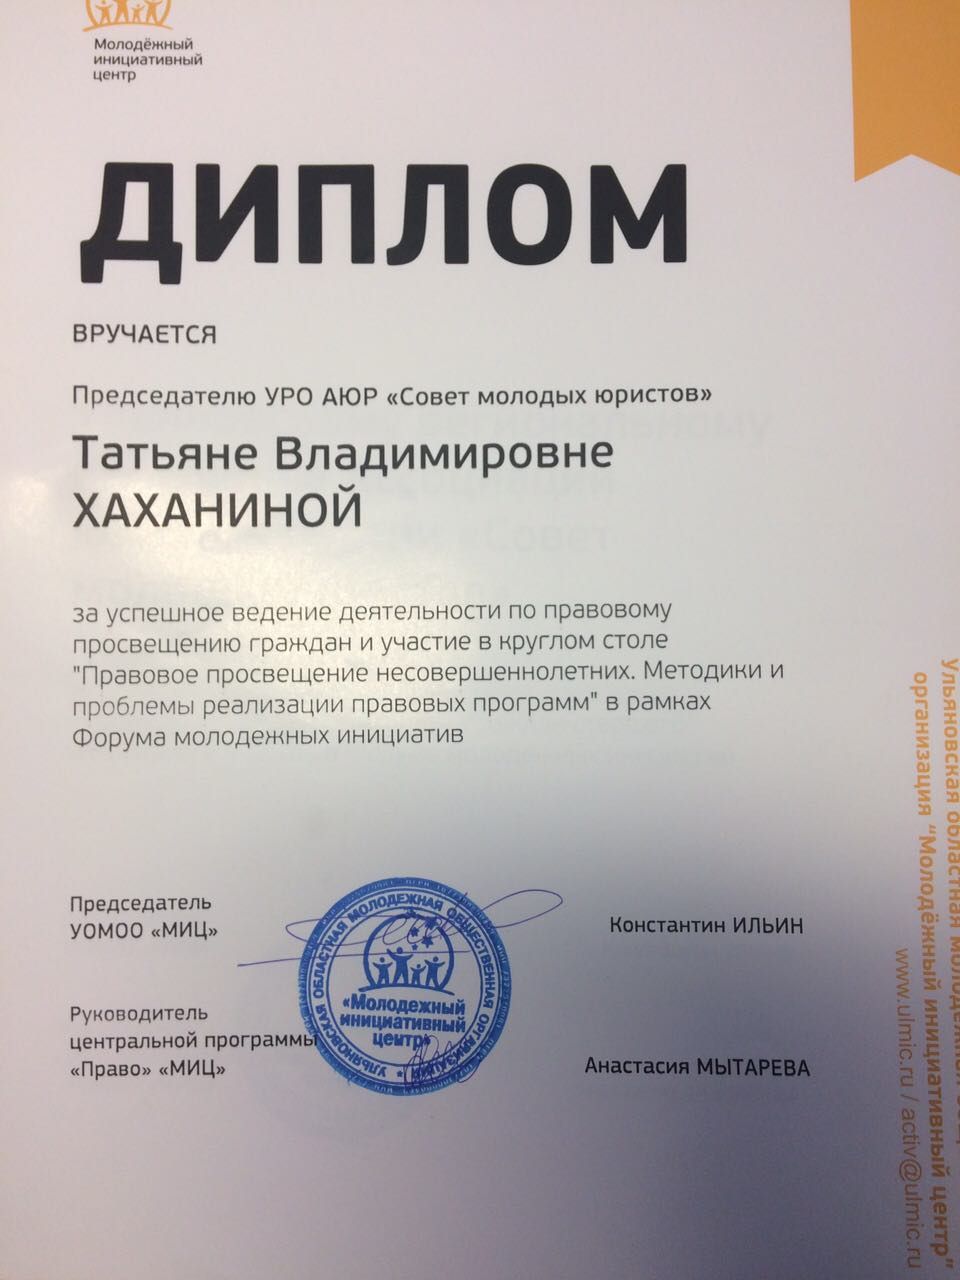 Ульяновское региональное отделение отмечено дипломом Молодёжного инициативного центра за успешное ведение деятельности по правовому просвещению